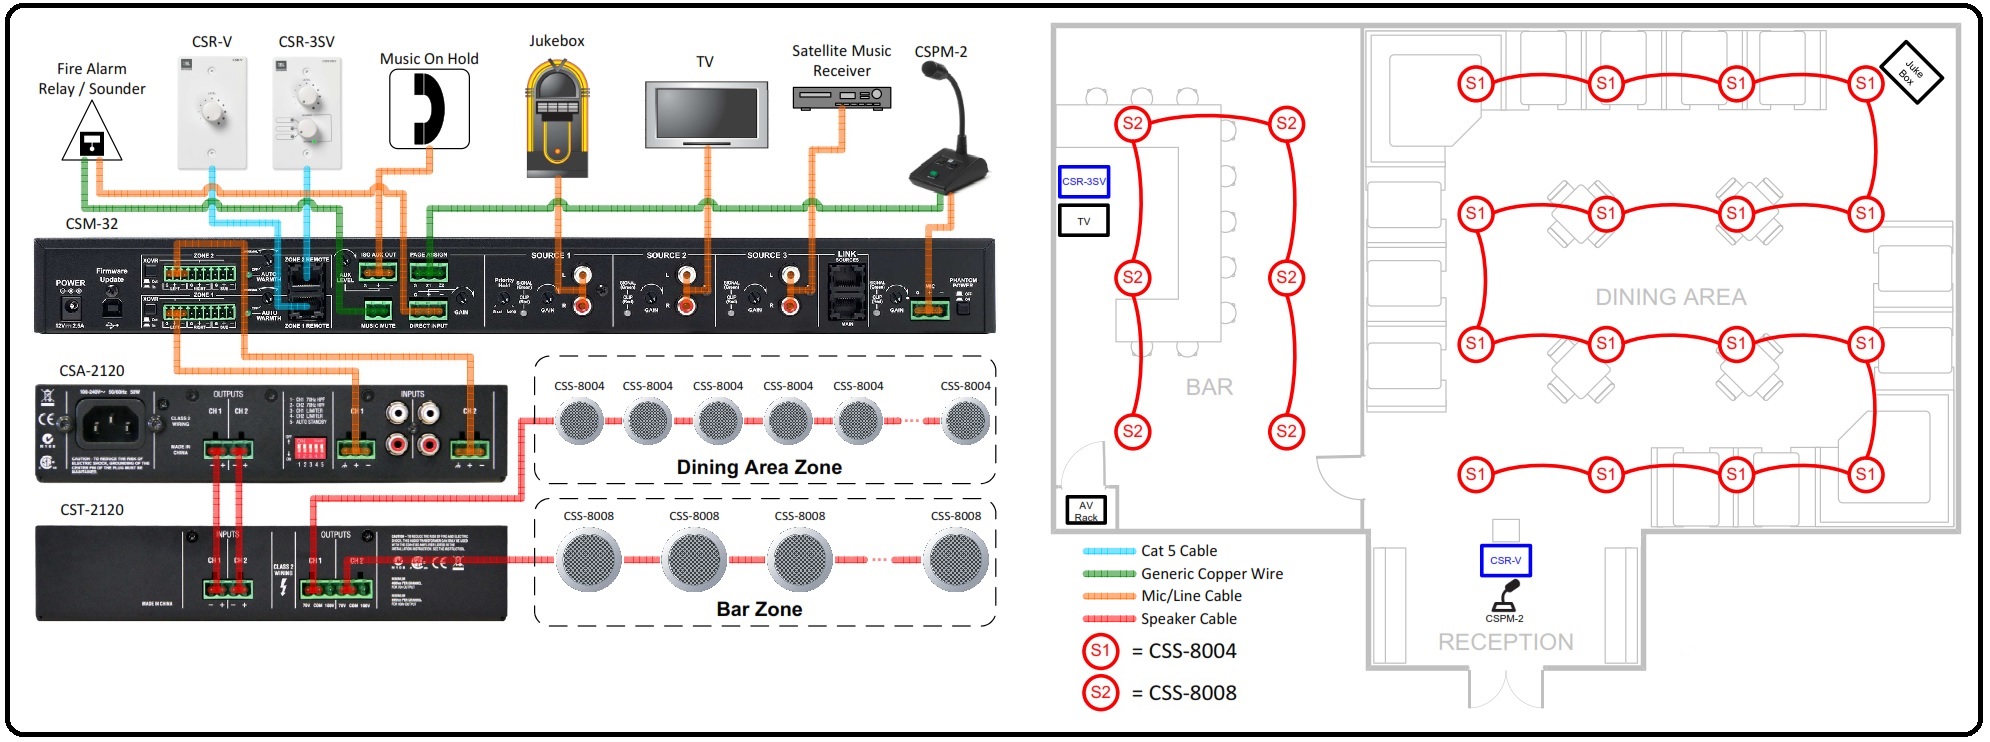 Схема организации аудиосистемы на базе JBL CSM-21 в ресторане